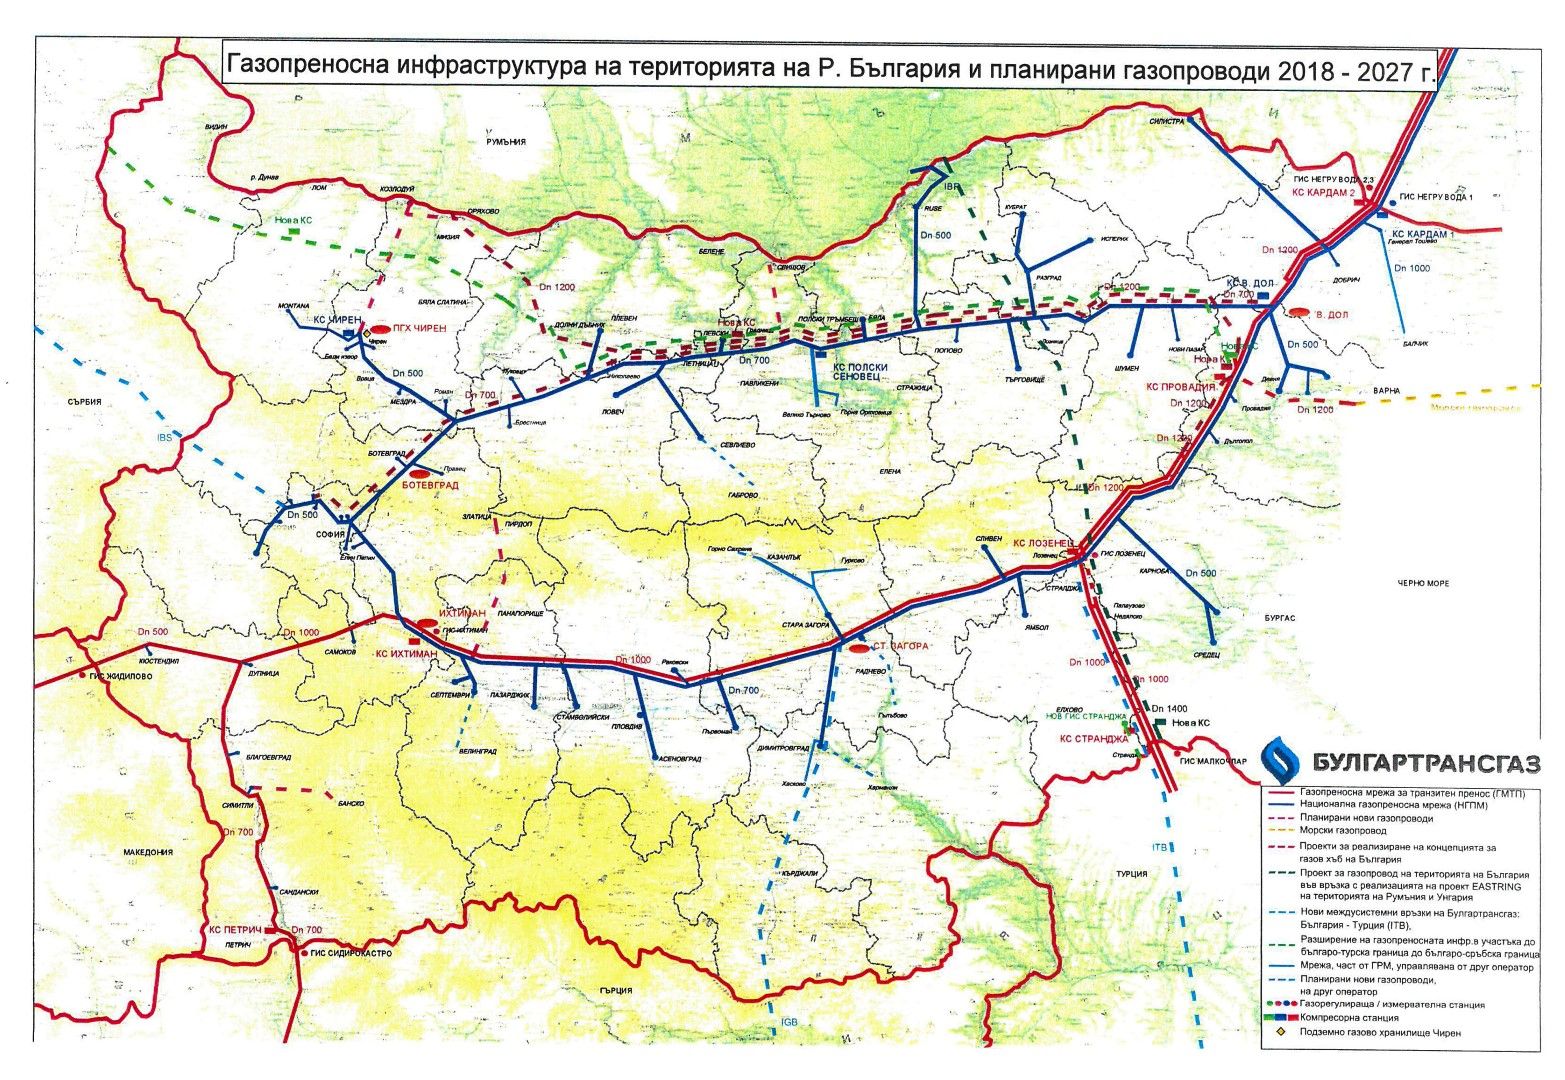 Газопреносната мрежа - съществуваща и в проект ("Балкански поток"), тръби и компресорни станции